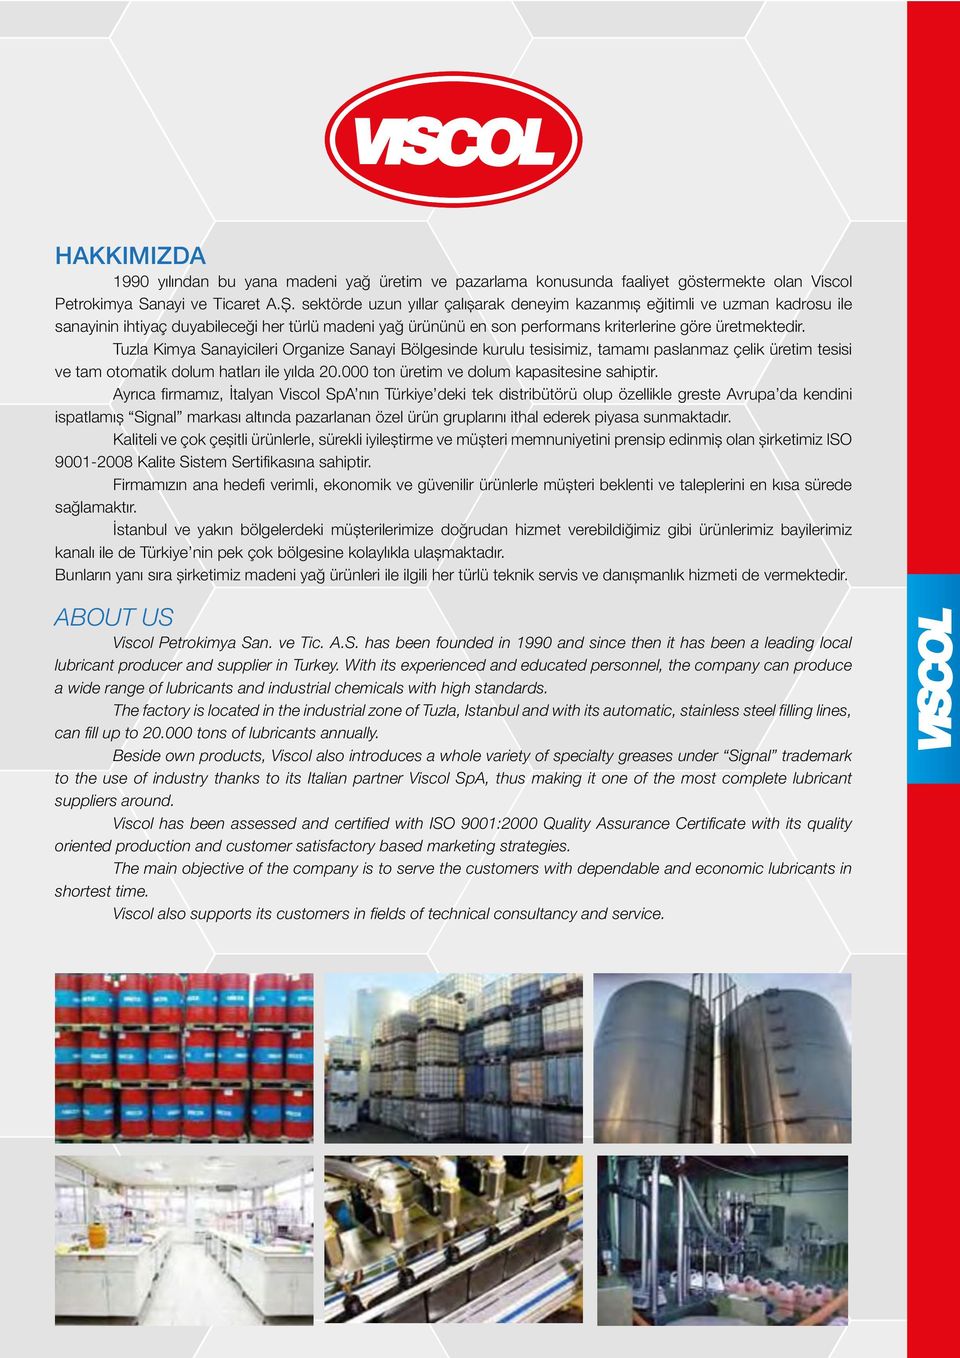 Tuzla Kimya Sanayicileri Organize Sanayi Bölgesinde kurulu tesisimiz, tamamı paslanmaz çelik üretim tesisi ve tam otomatik dolum hatları ile yılda 20.000 ton üretim ve dolum kapasitesine sahiptir.